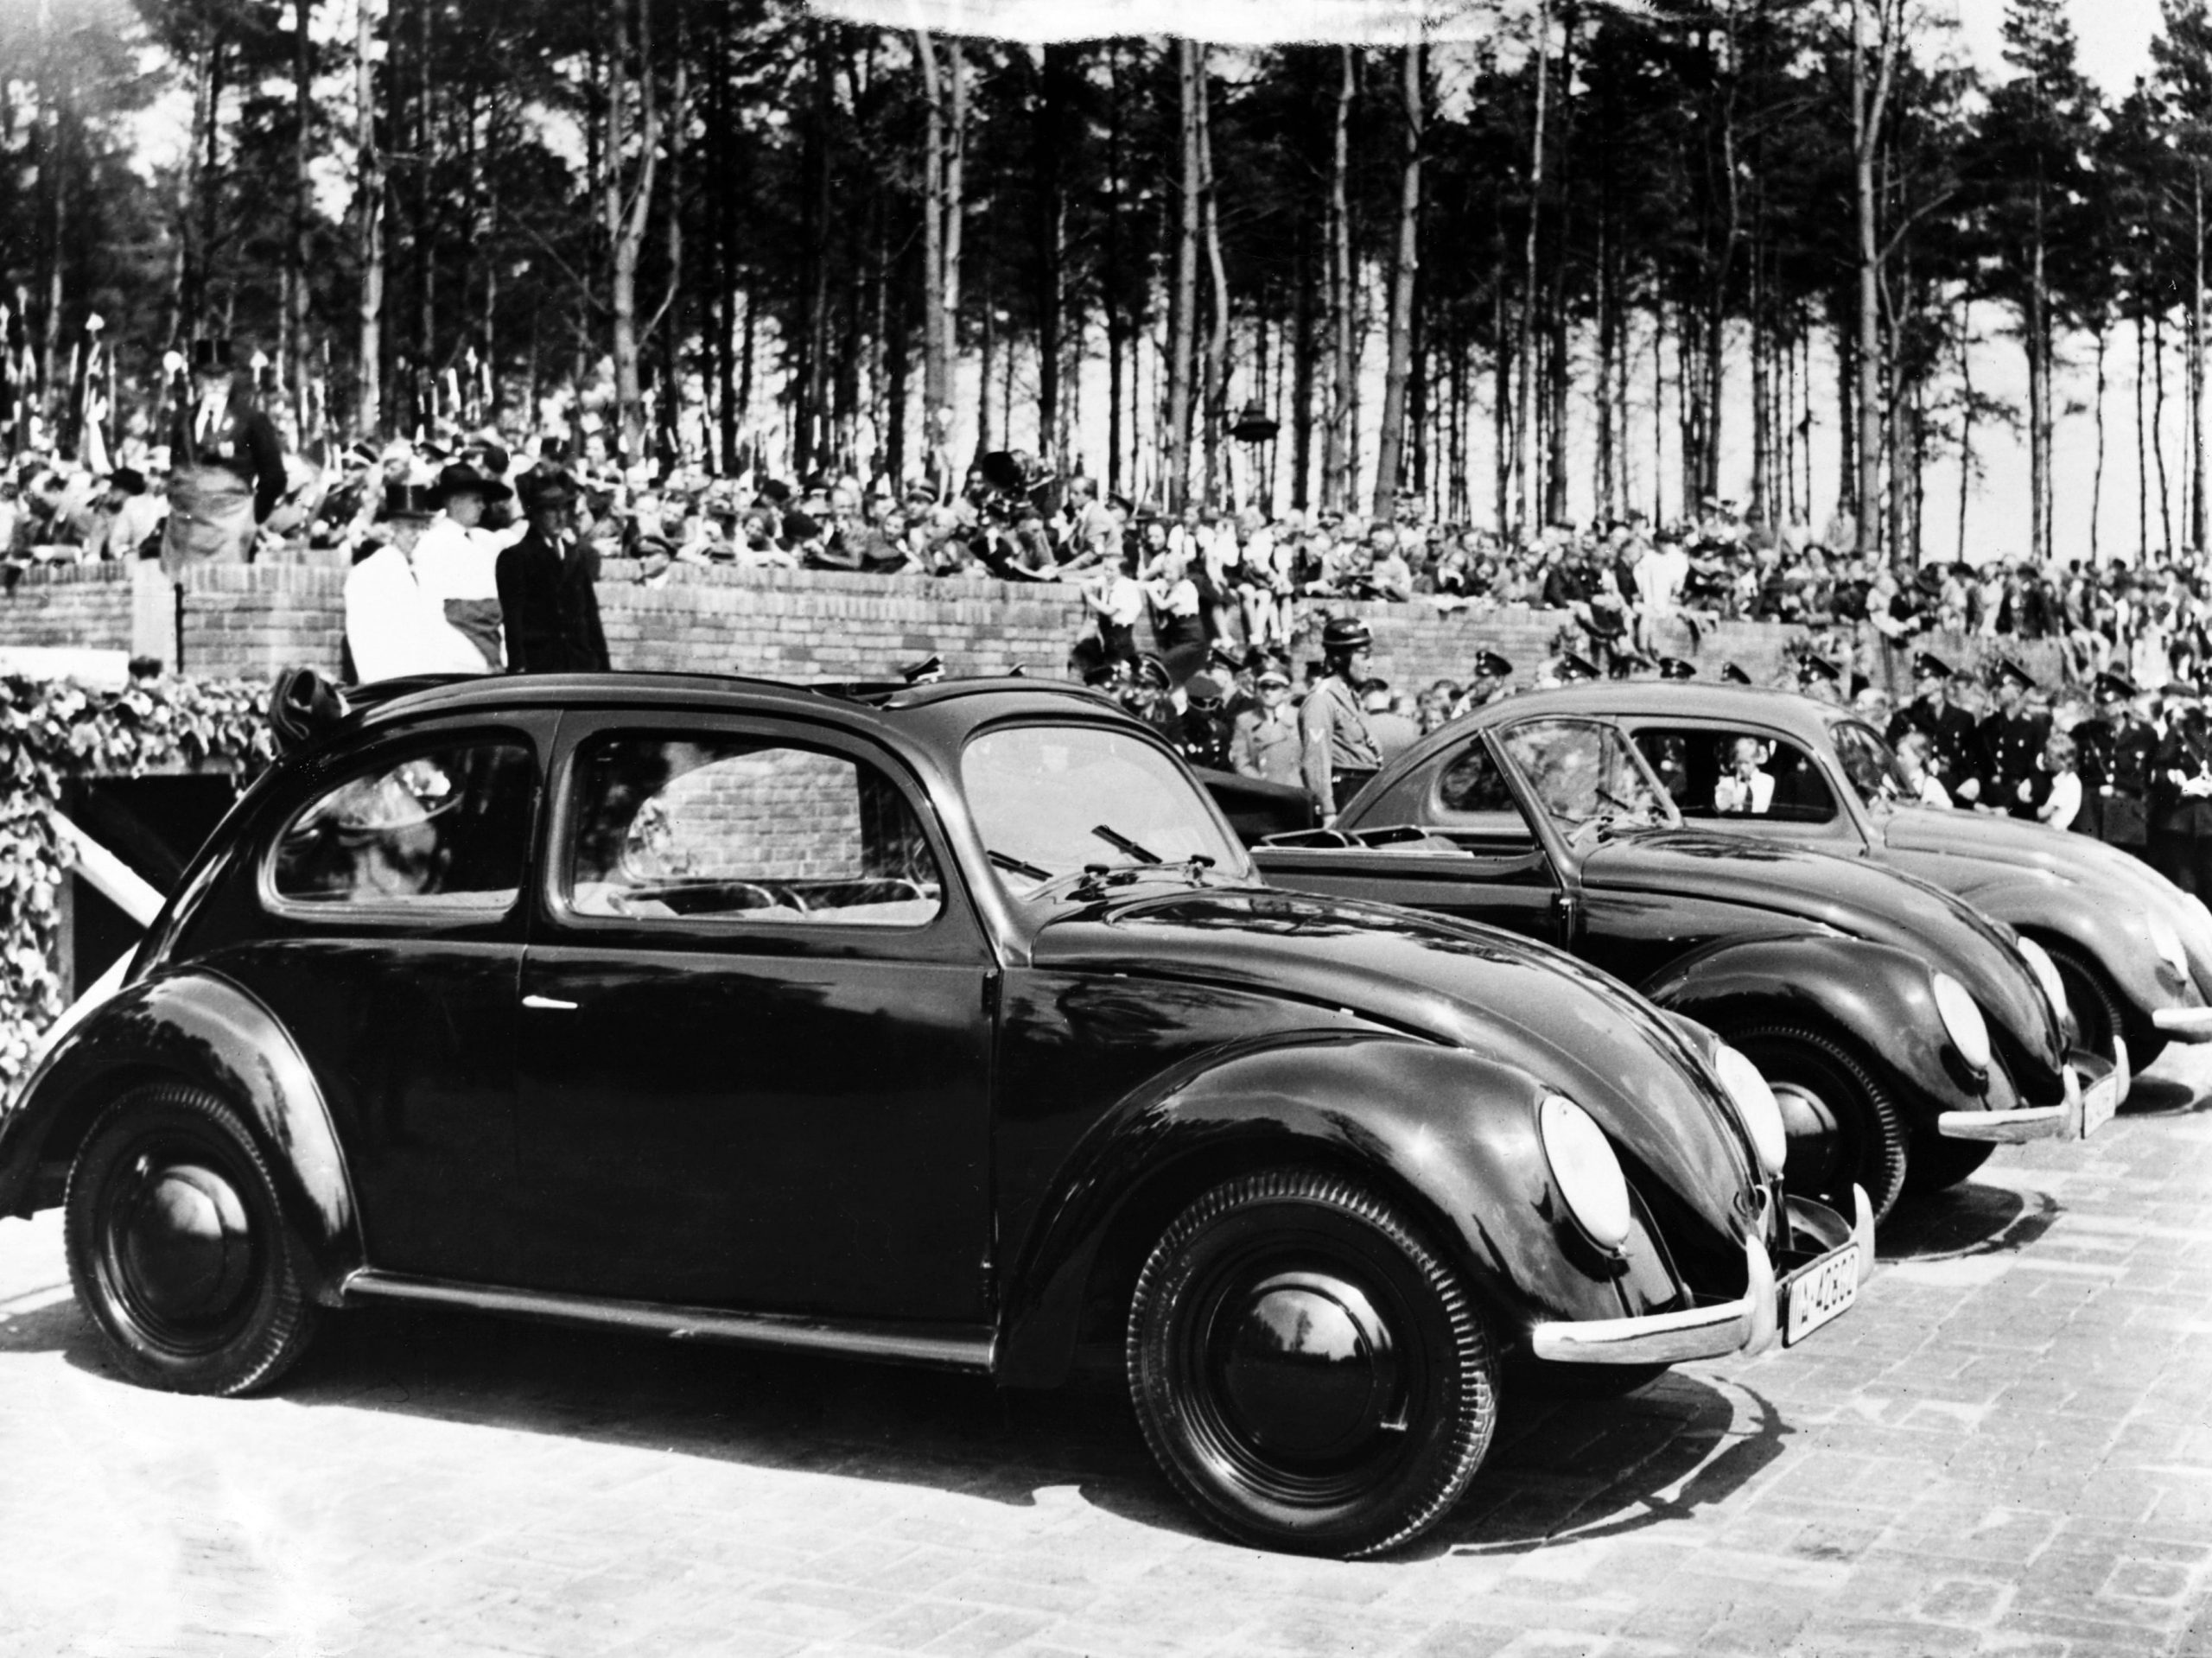 Adolf Hitler staat achter de auto's in een donkere jas, klaar om de nieuwe fabriek in te wijden.